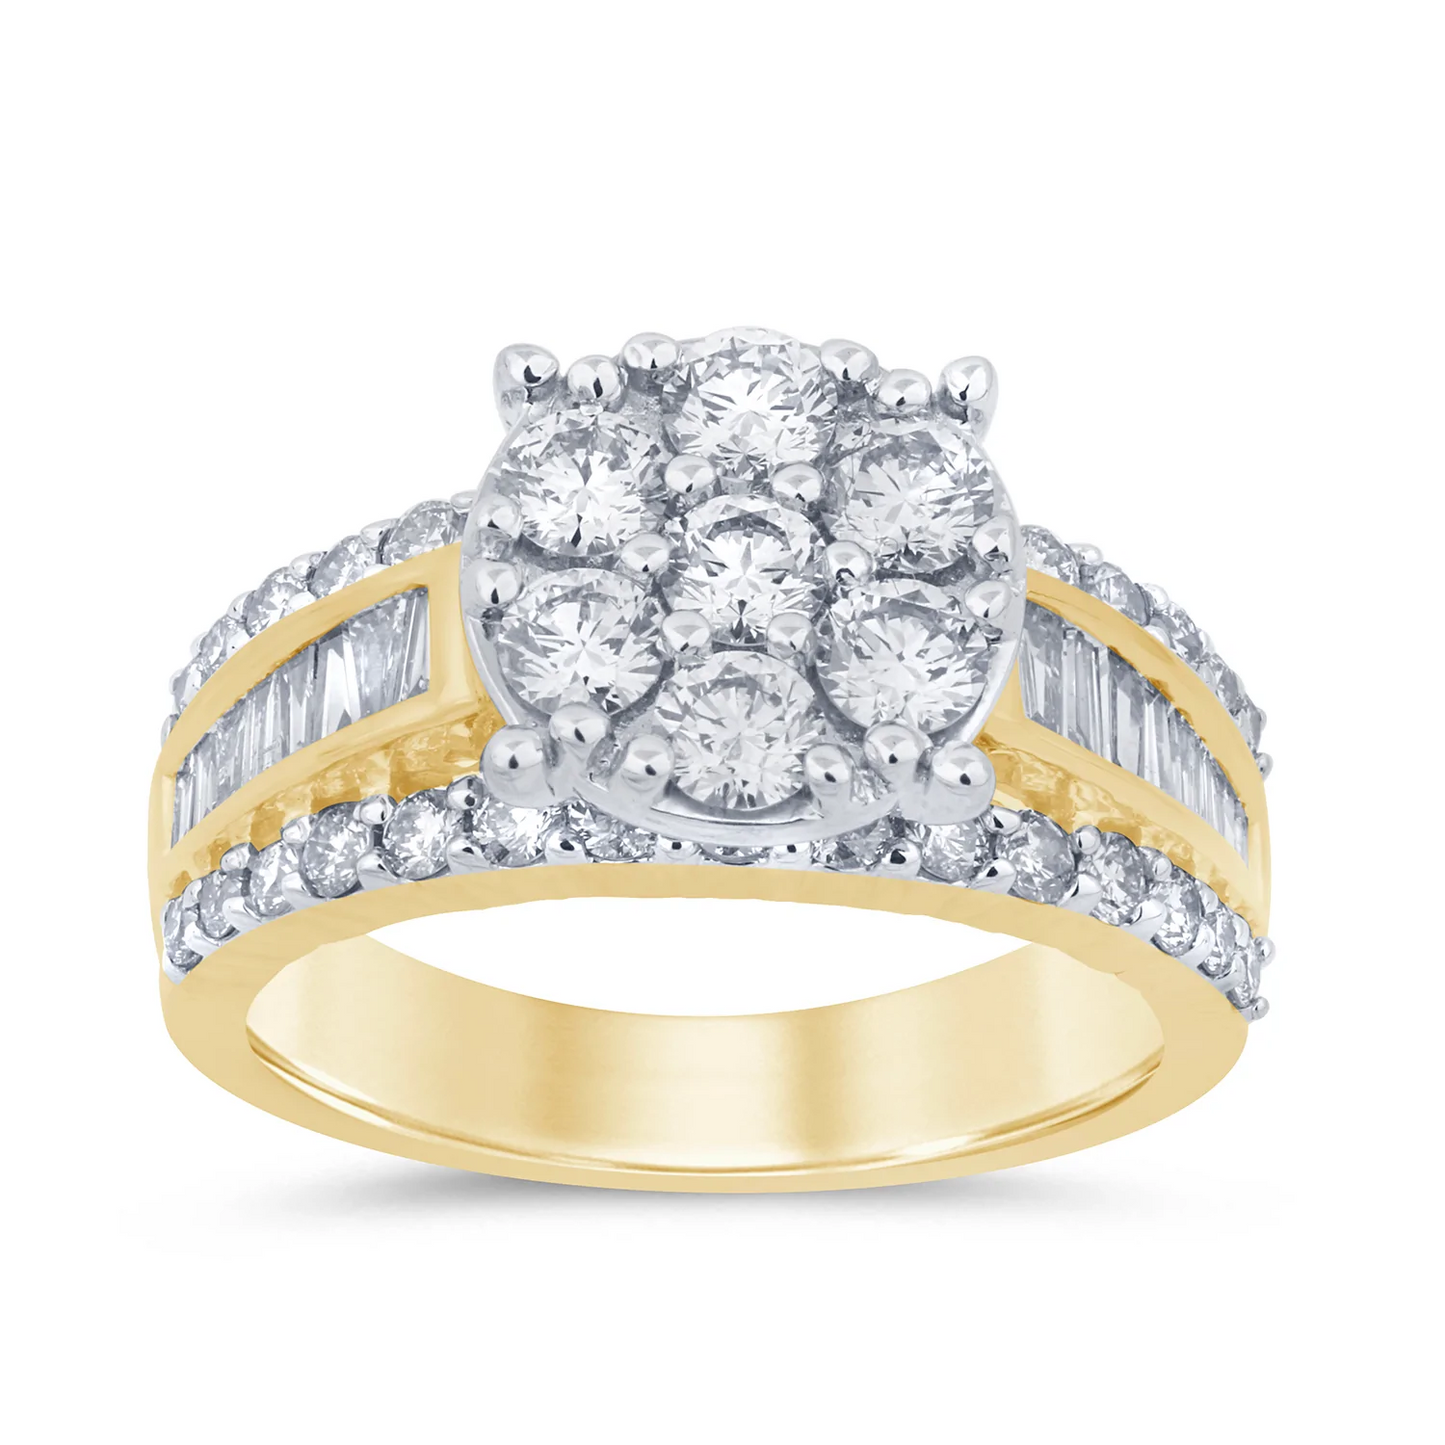 10K YELLOW GOLD 2.25 CARAT WOMEN REAL DIAMOND ENGAGEMENT RING WEDDING RING BRIDAL / SKU ENO27925G-YG